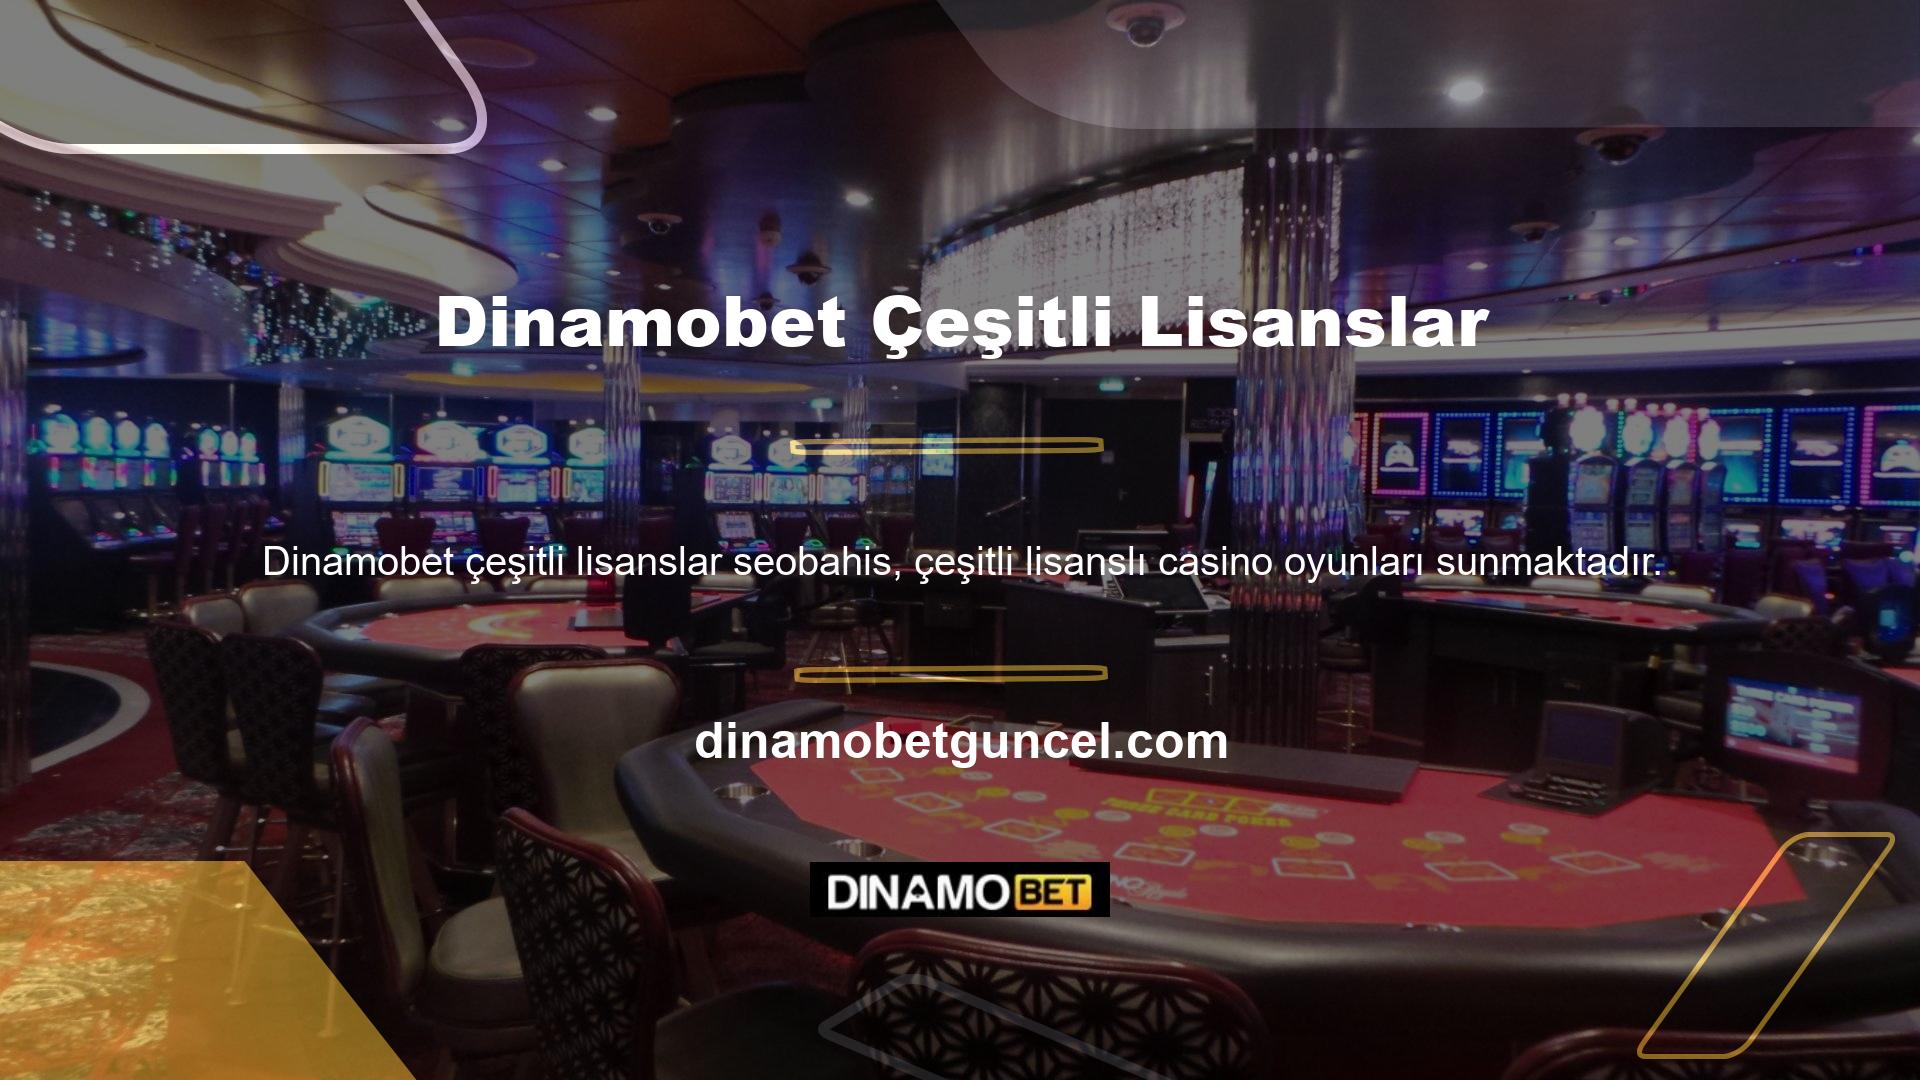 Dinamobet artık lisanslı casino oyunları da sunuyor